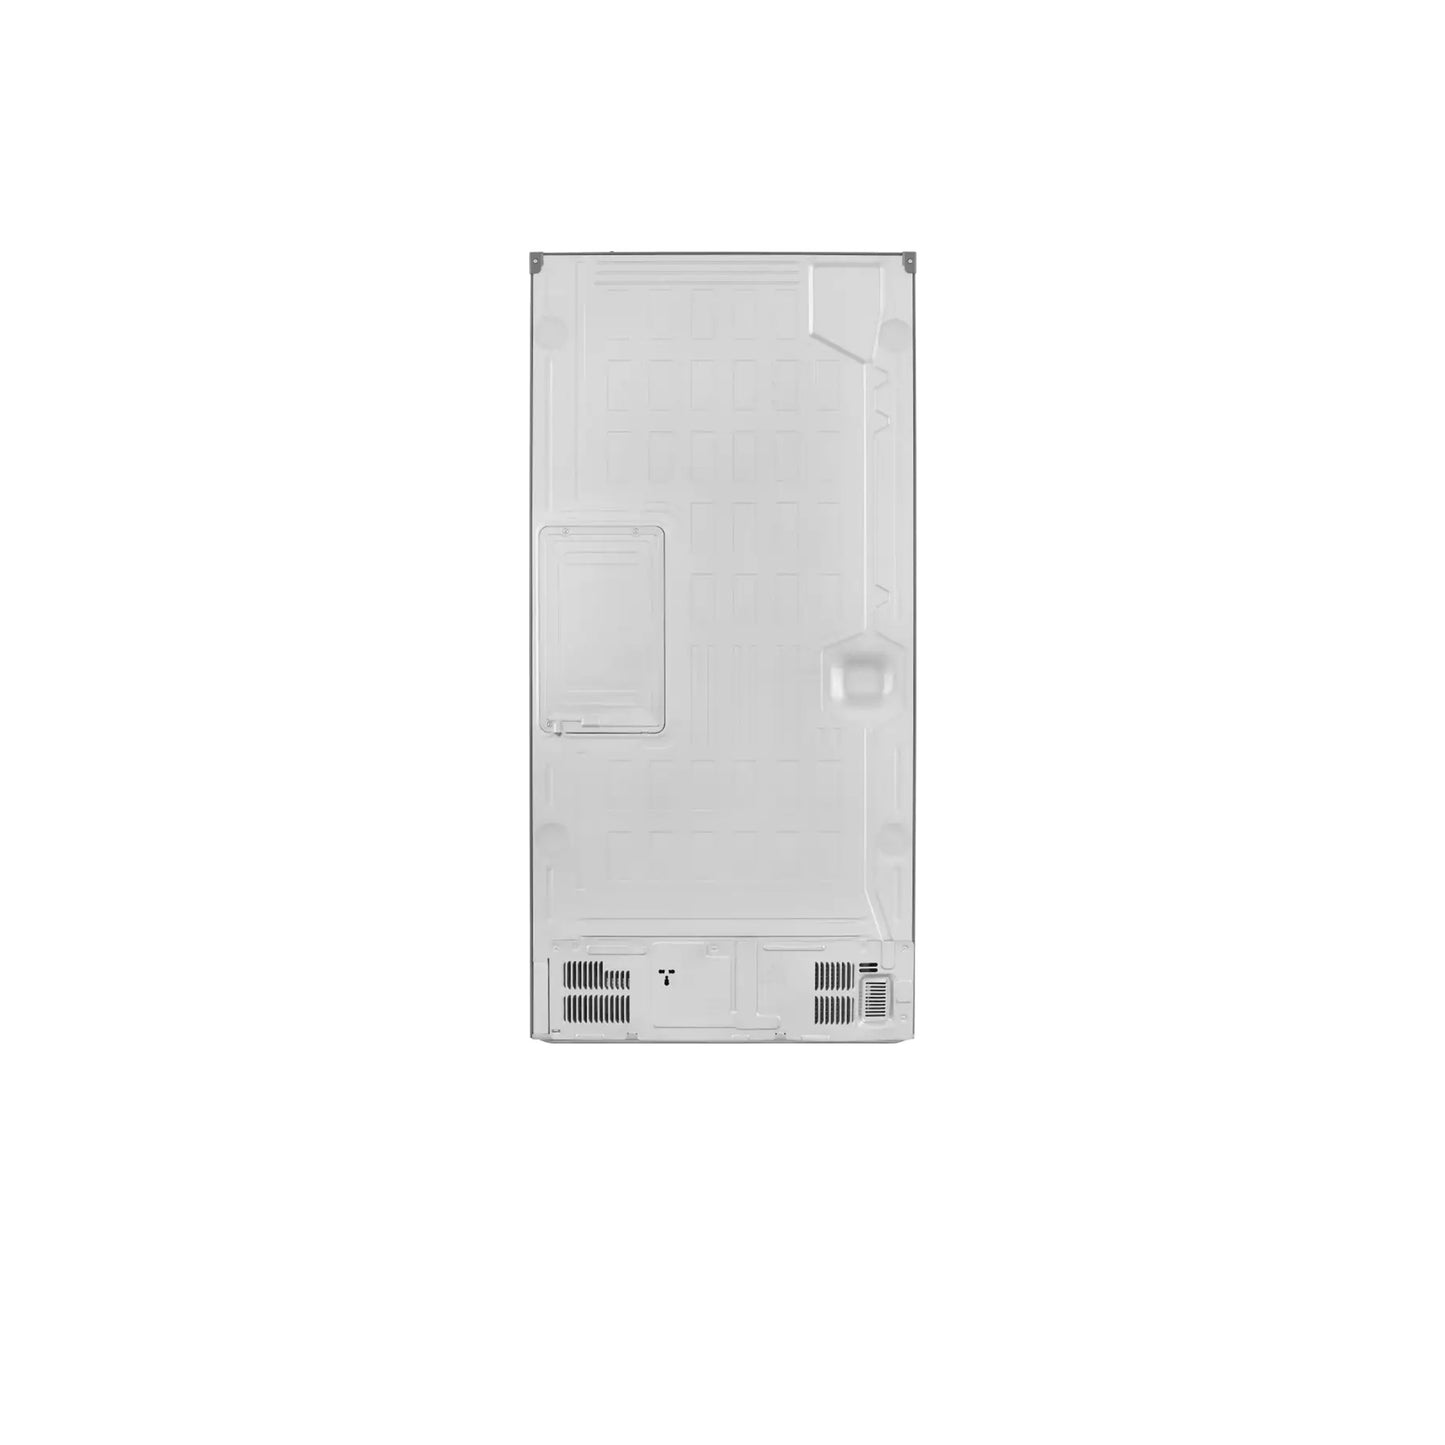 19 cu. ft. Counter-Depth French Door Refrigerator with Door Cooling